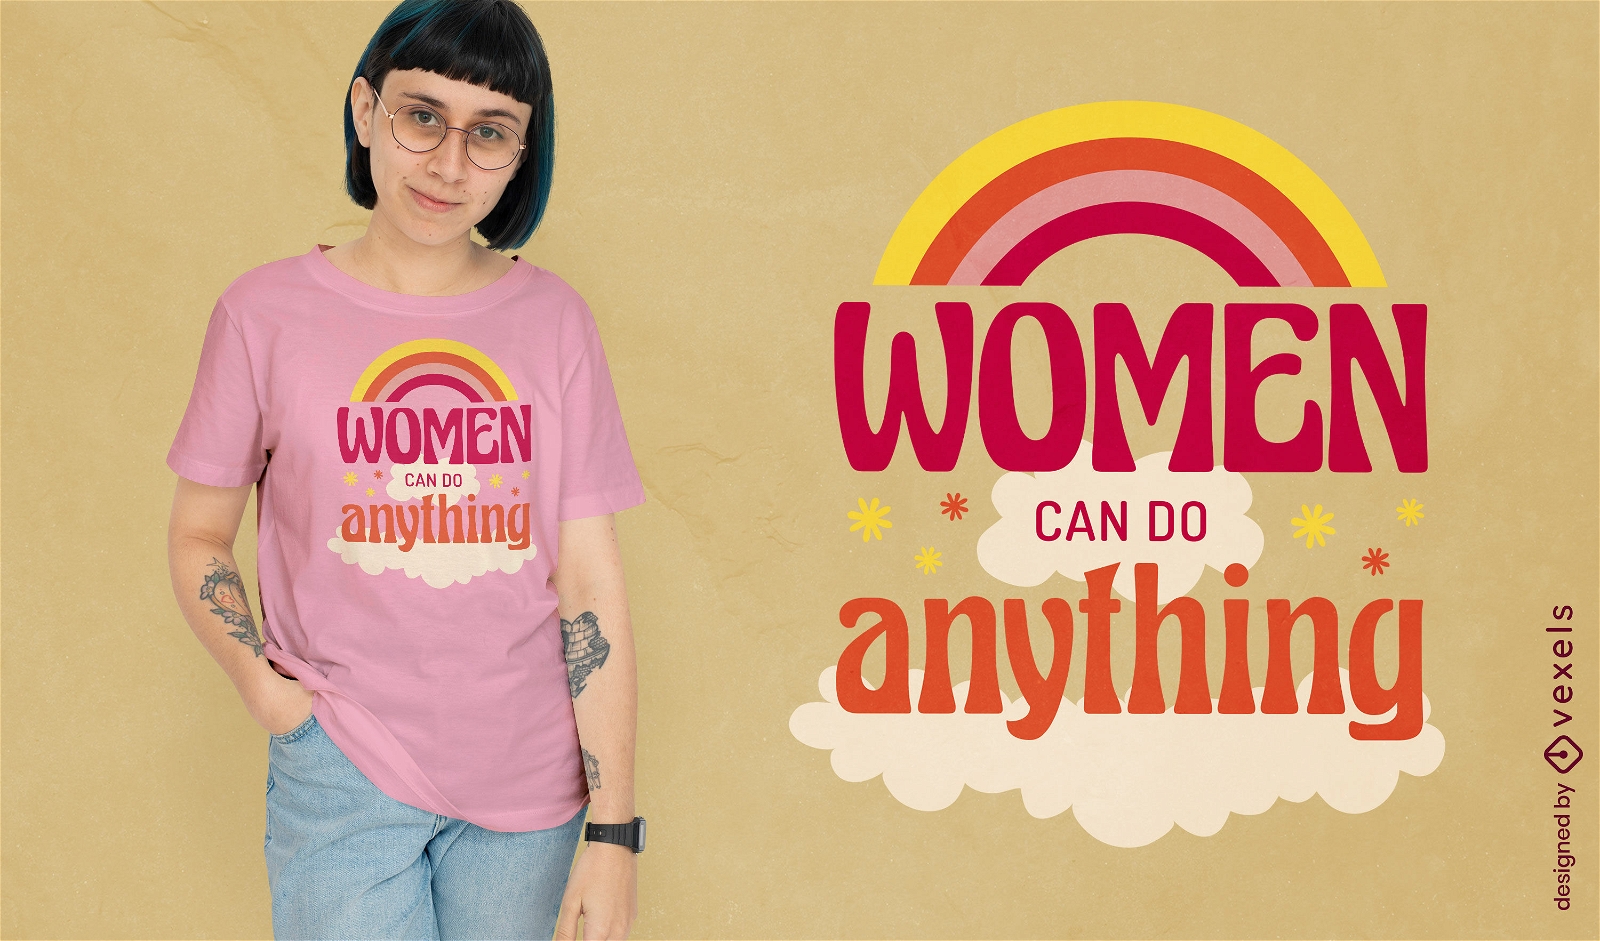 As mulheres podem fazer qualquer coisa design de camiseta com citação feminista